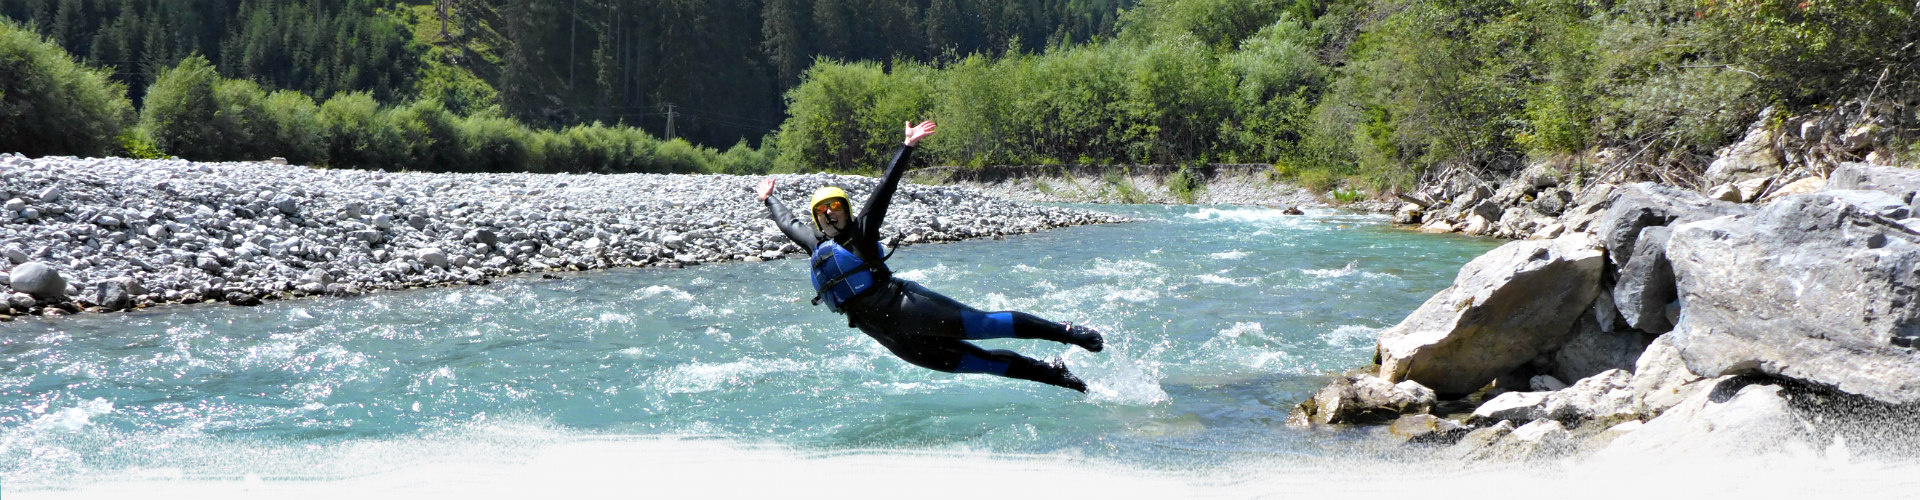 Sprung in den Lech beim Rafting in Österreich